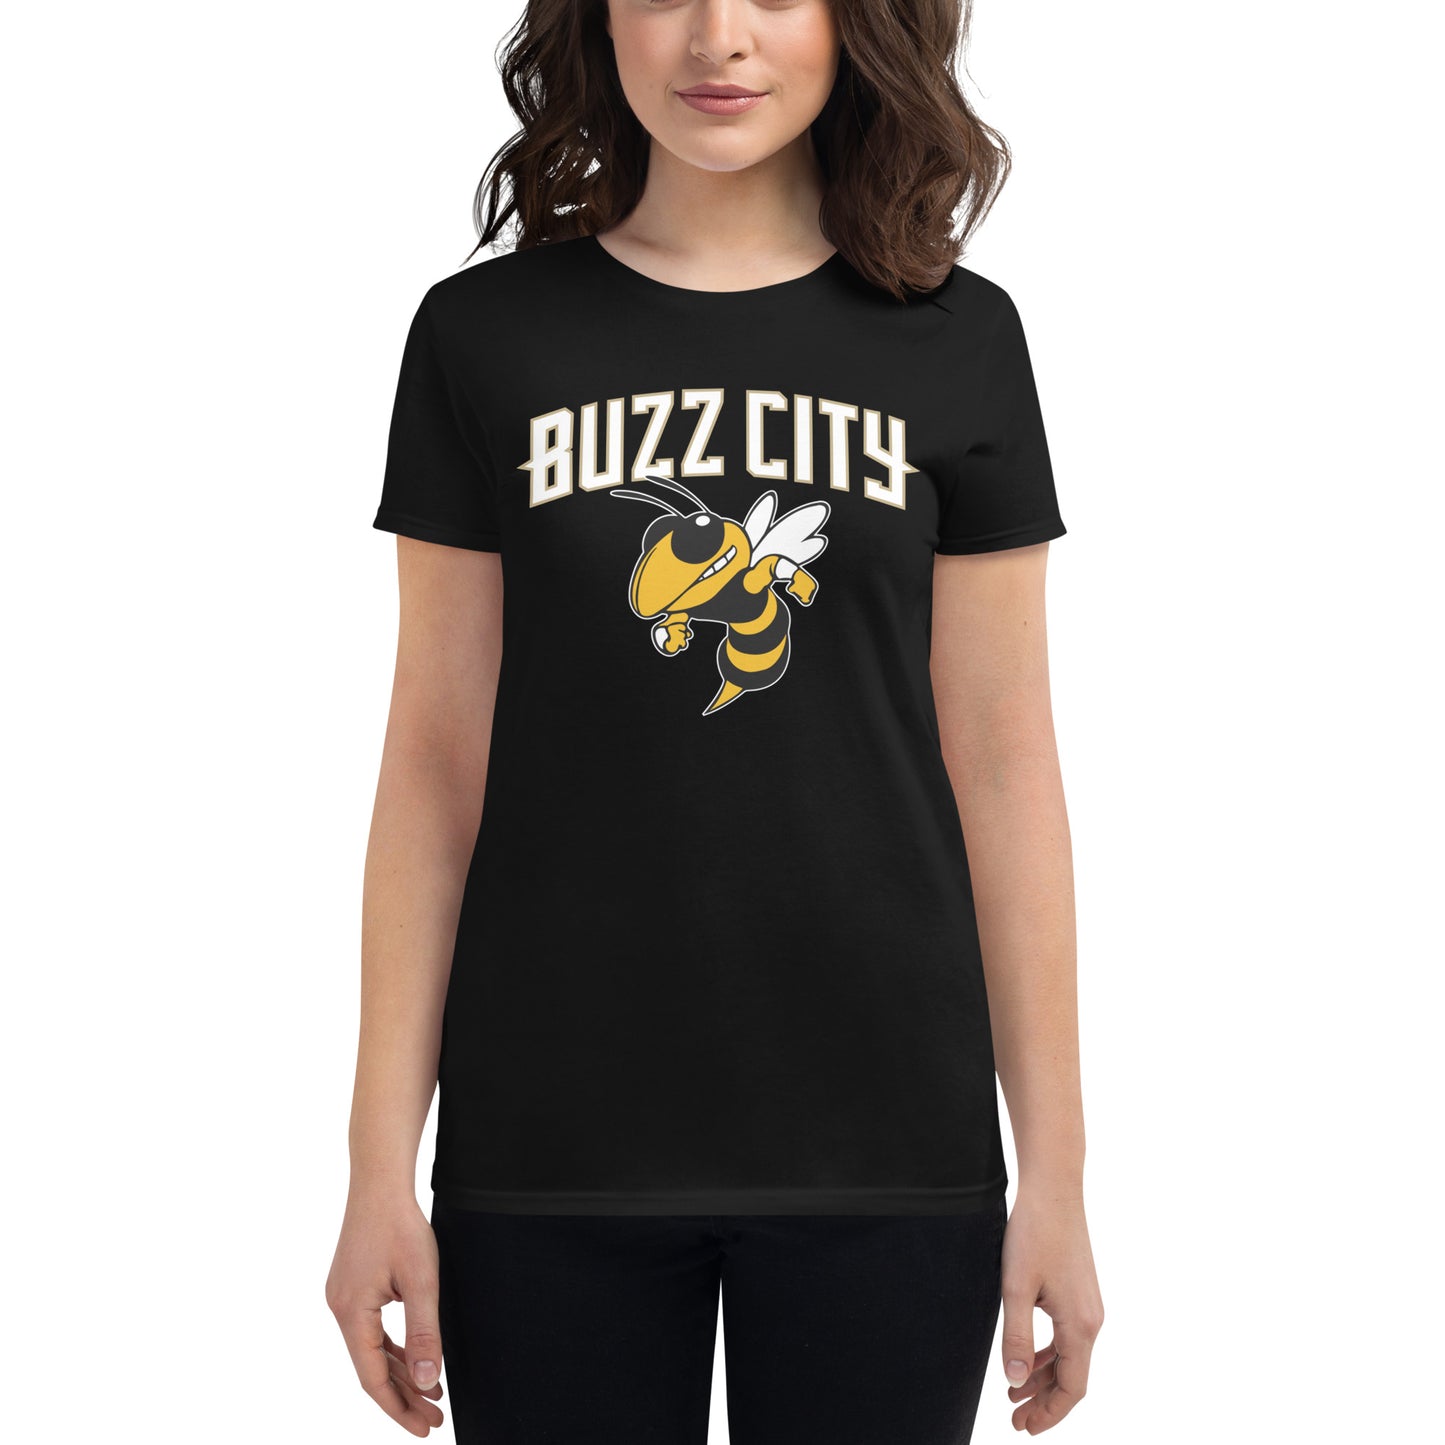 Women's Buzz City t-shirt